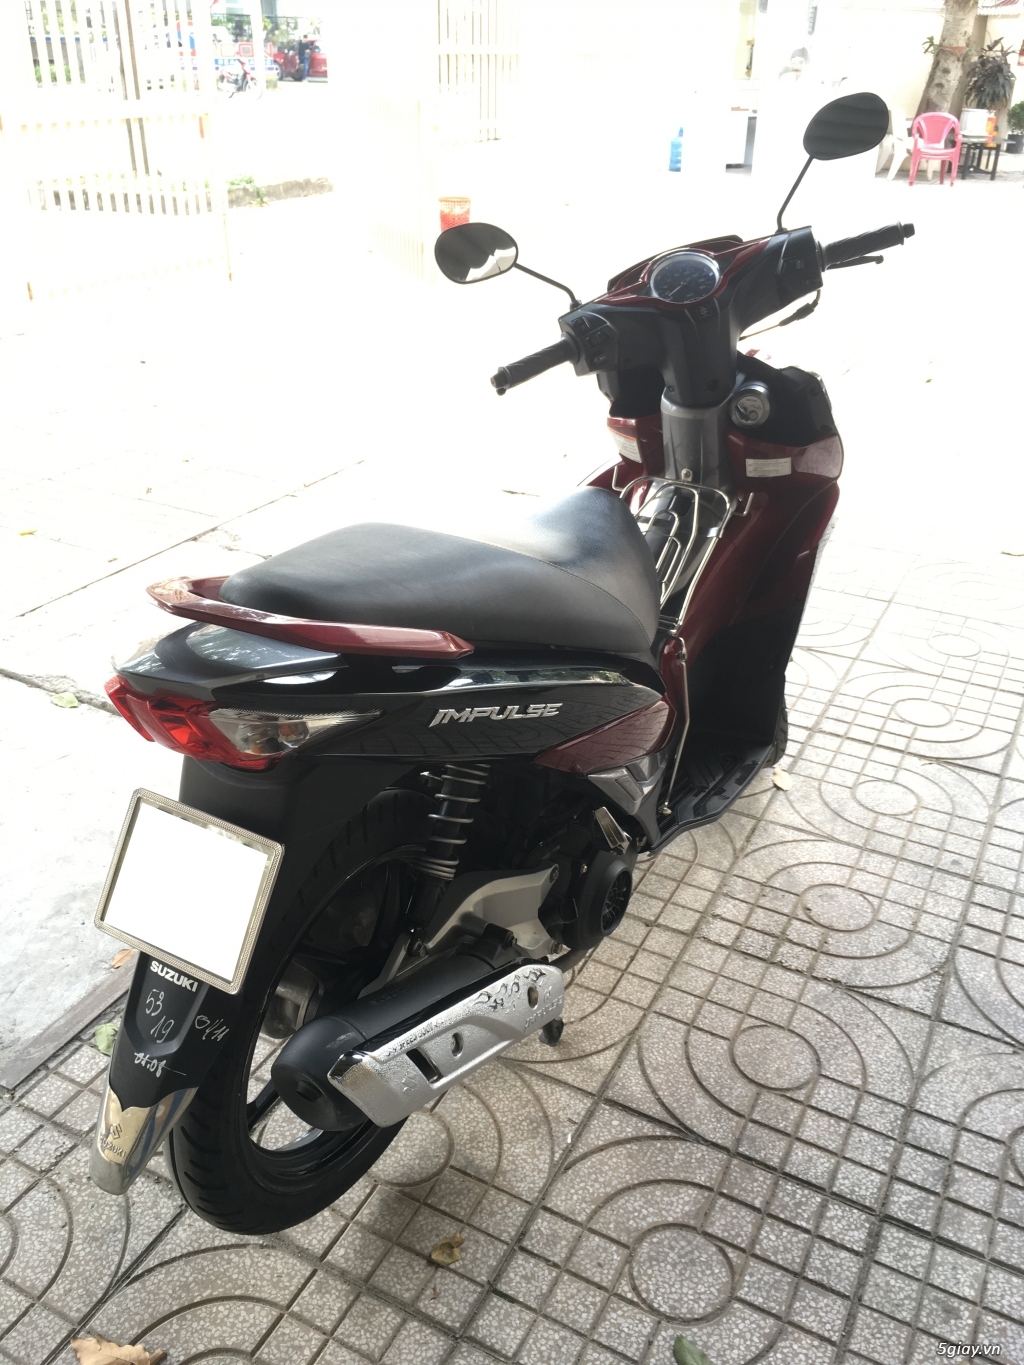 Cần bán Suzuki Impulse đk 2015 màu đỏ đen, BSTP chính chủ - 4